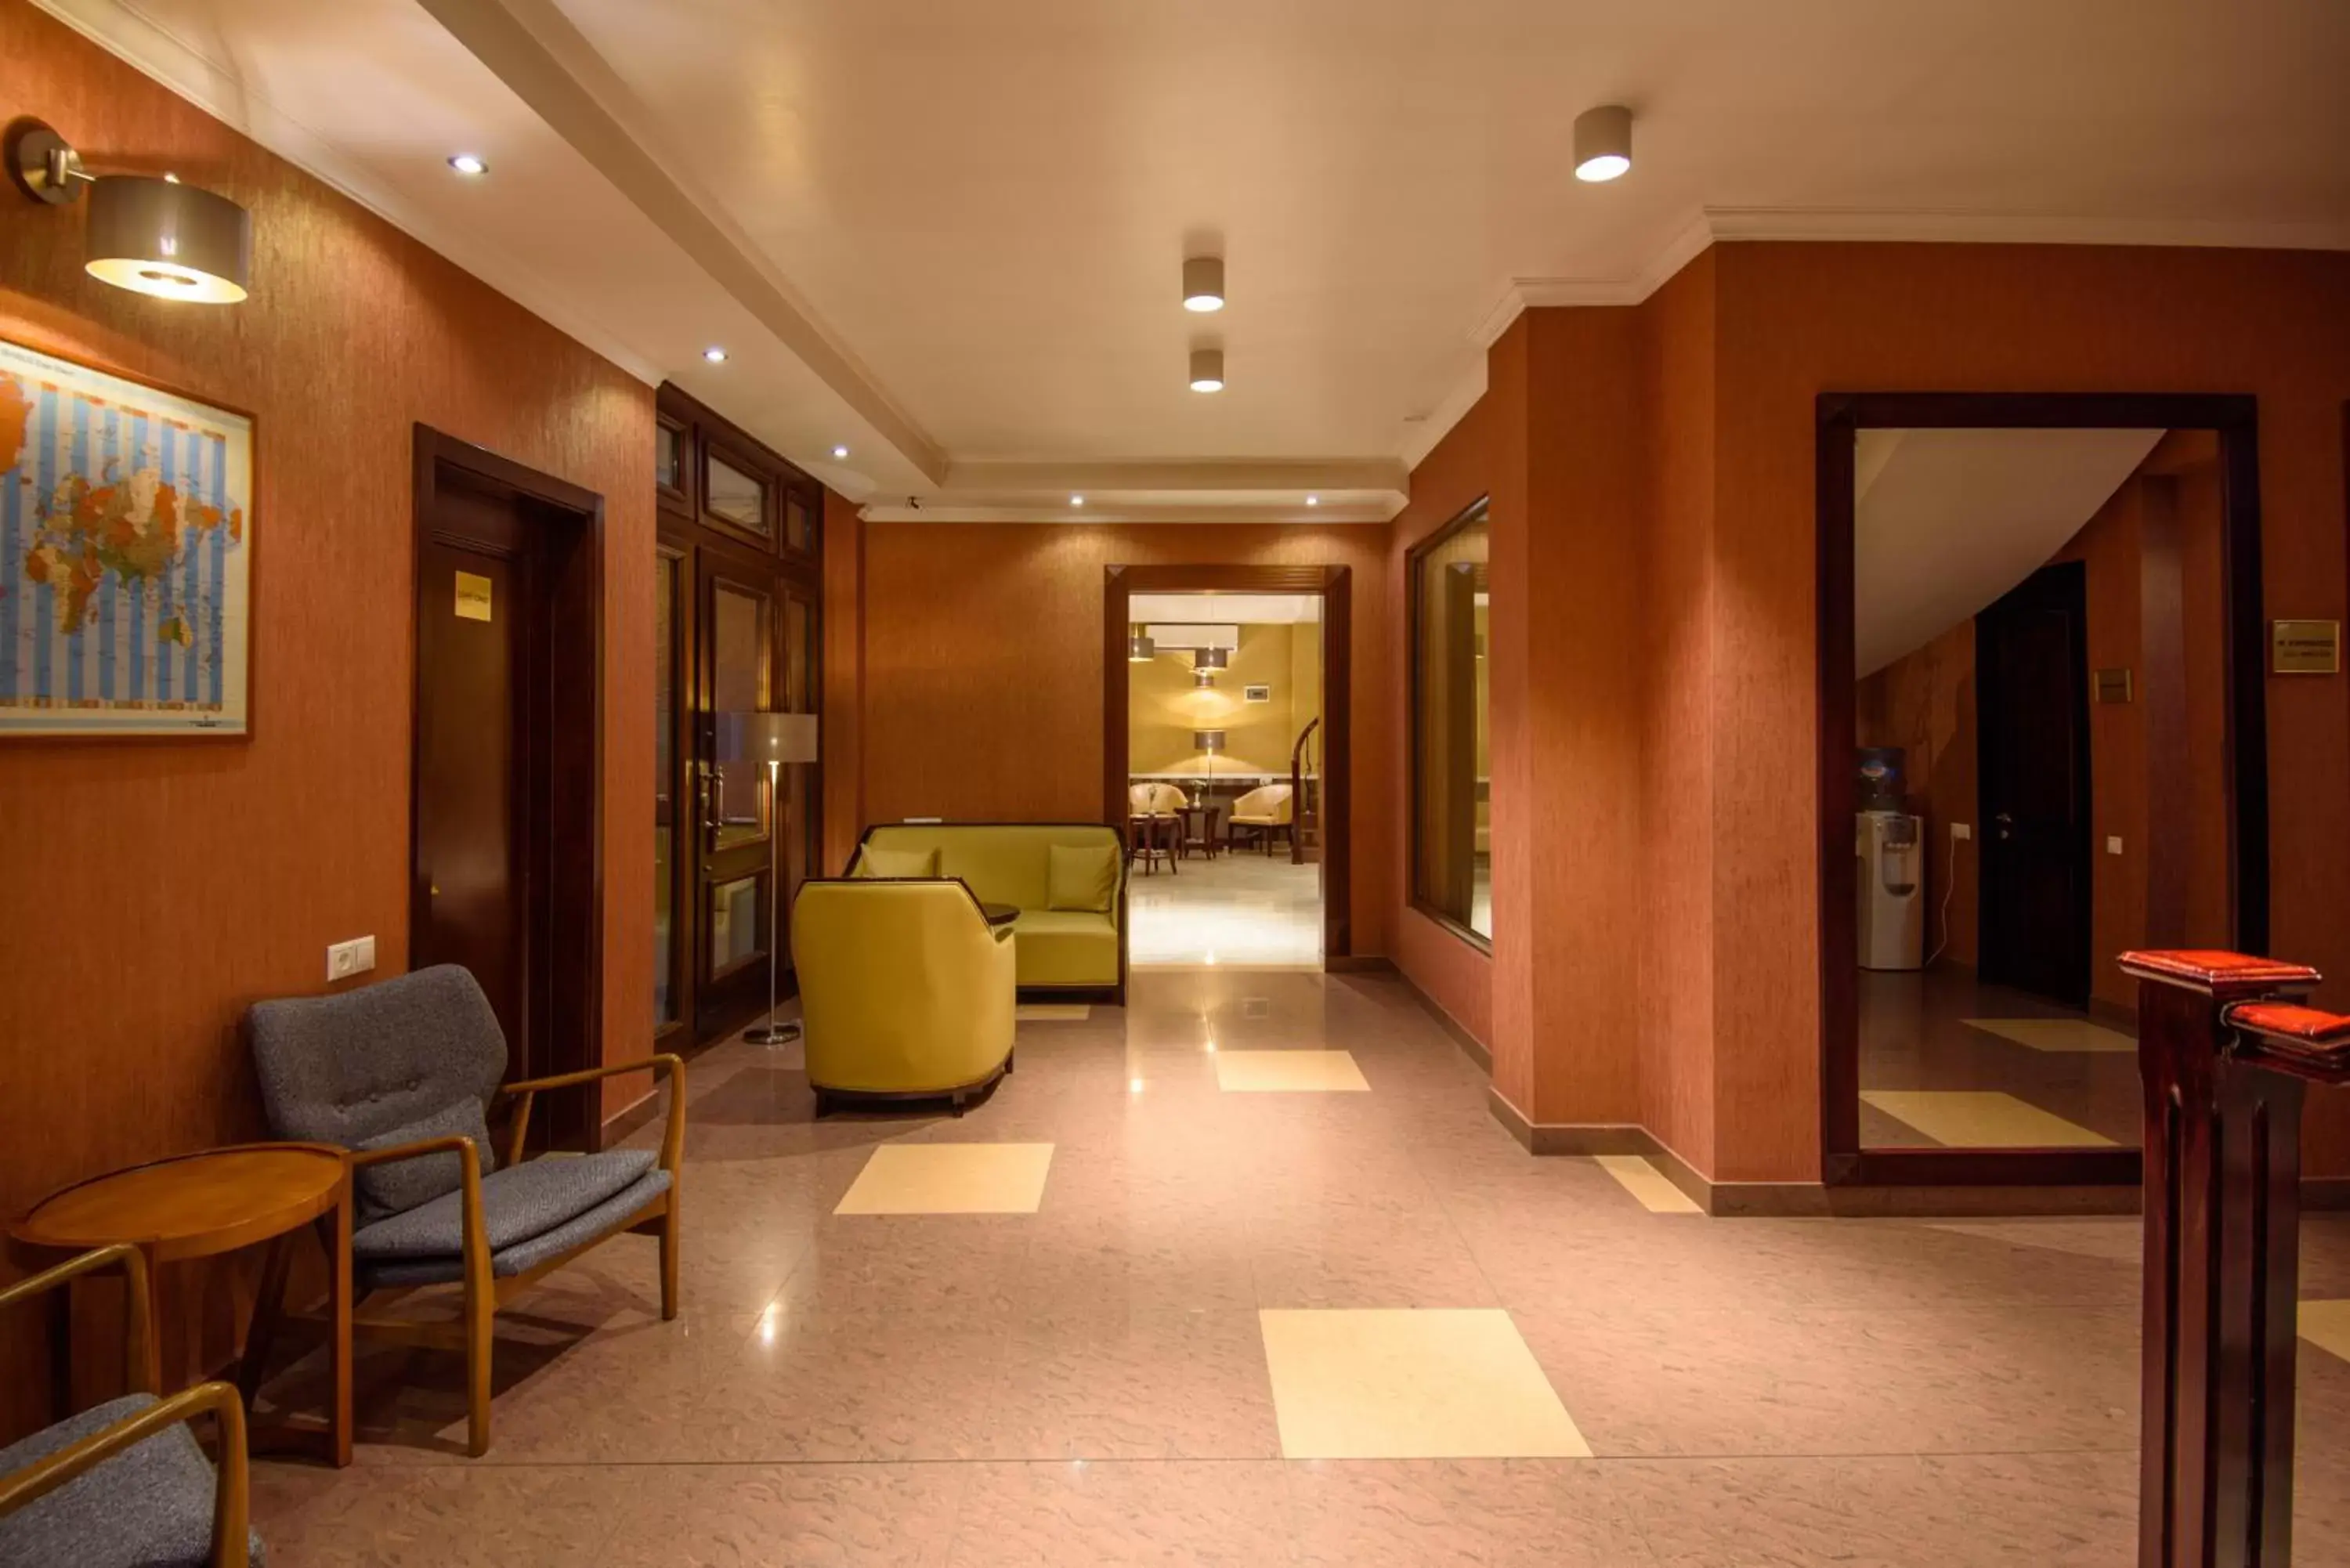 Lobby or reception, Lobby/Reception in KMM Hotel